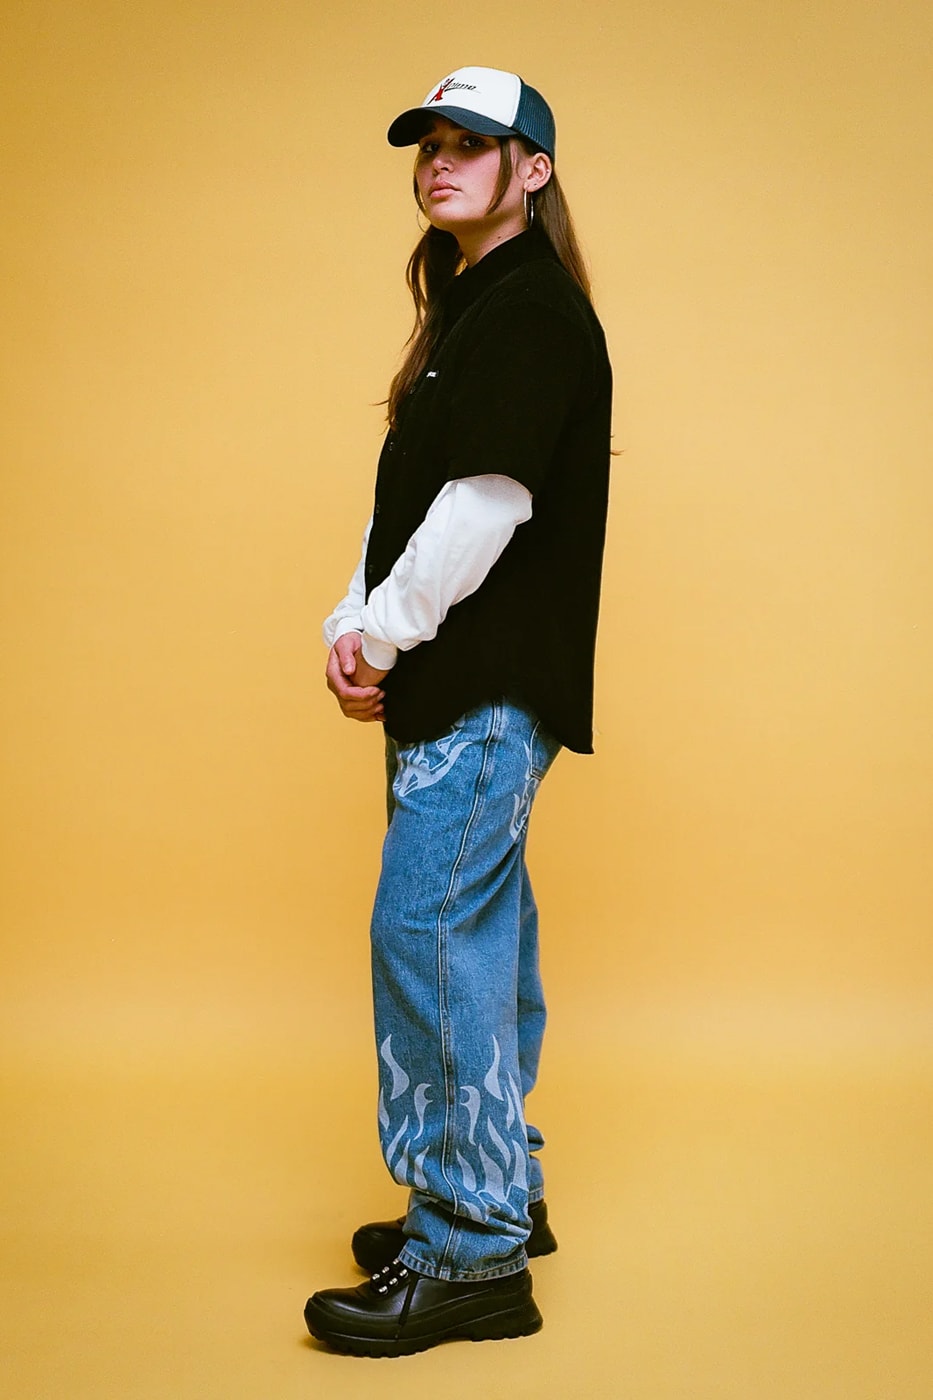 ダイム 2023年ホリデーコレクション Dime Releases Winter-Ready Staples for Holiday 2023 plaid jackets puffer jackets corduroy pants fleece jackets wavy sweater montreal canadian streetwear skatewear brand